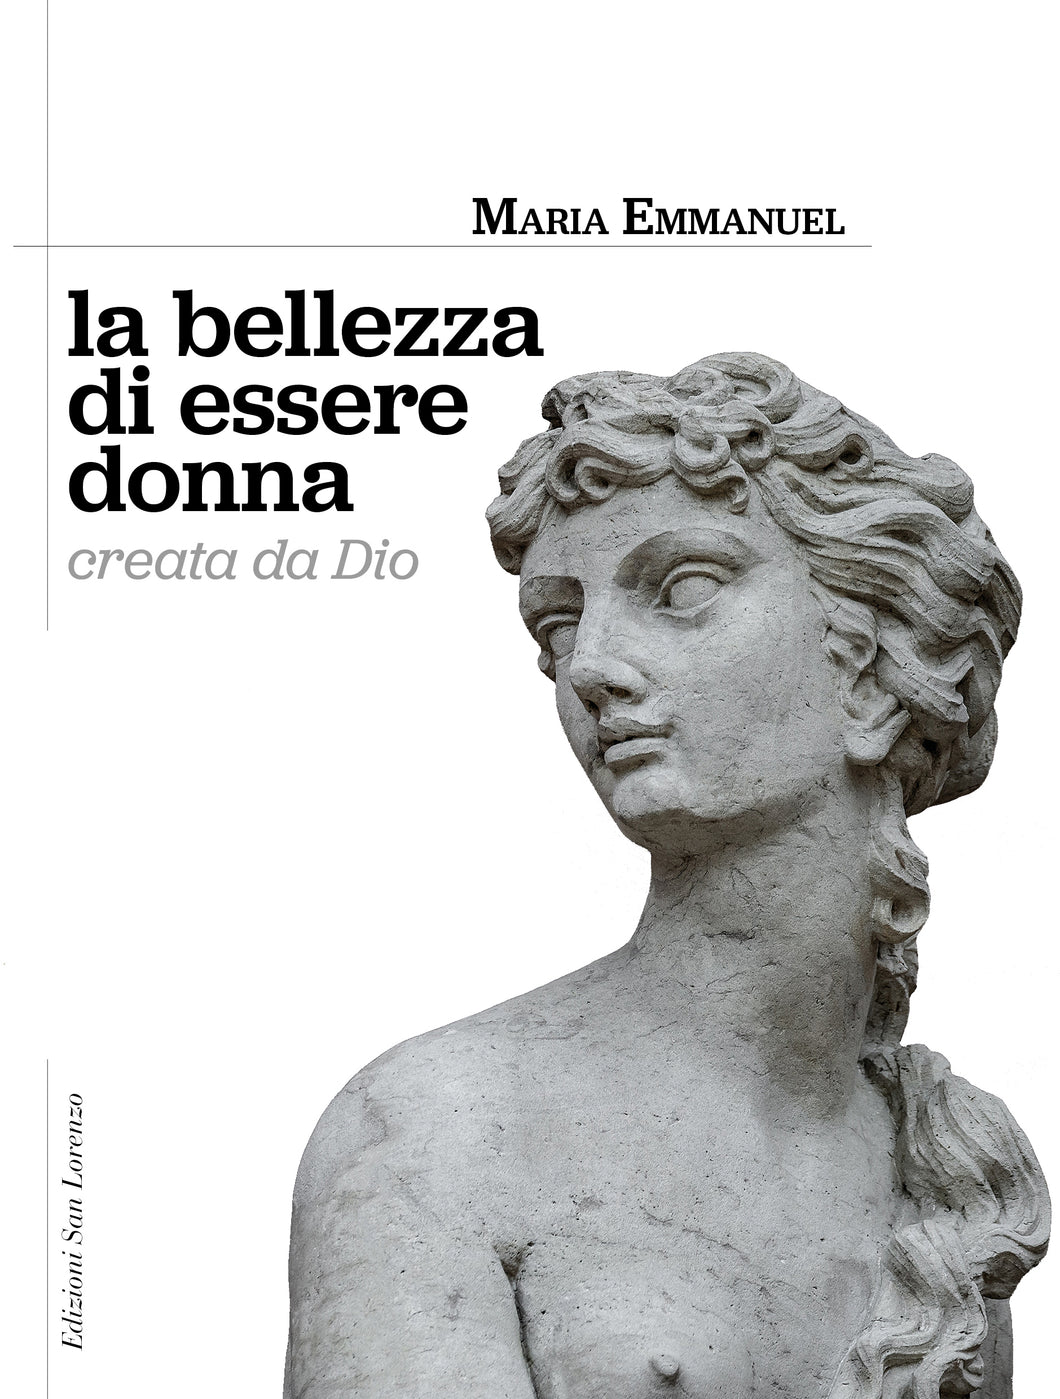 Madre Maria Emmanuel - La bellezza di essere donna creata da Dio - Edizioni San Lorenzo